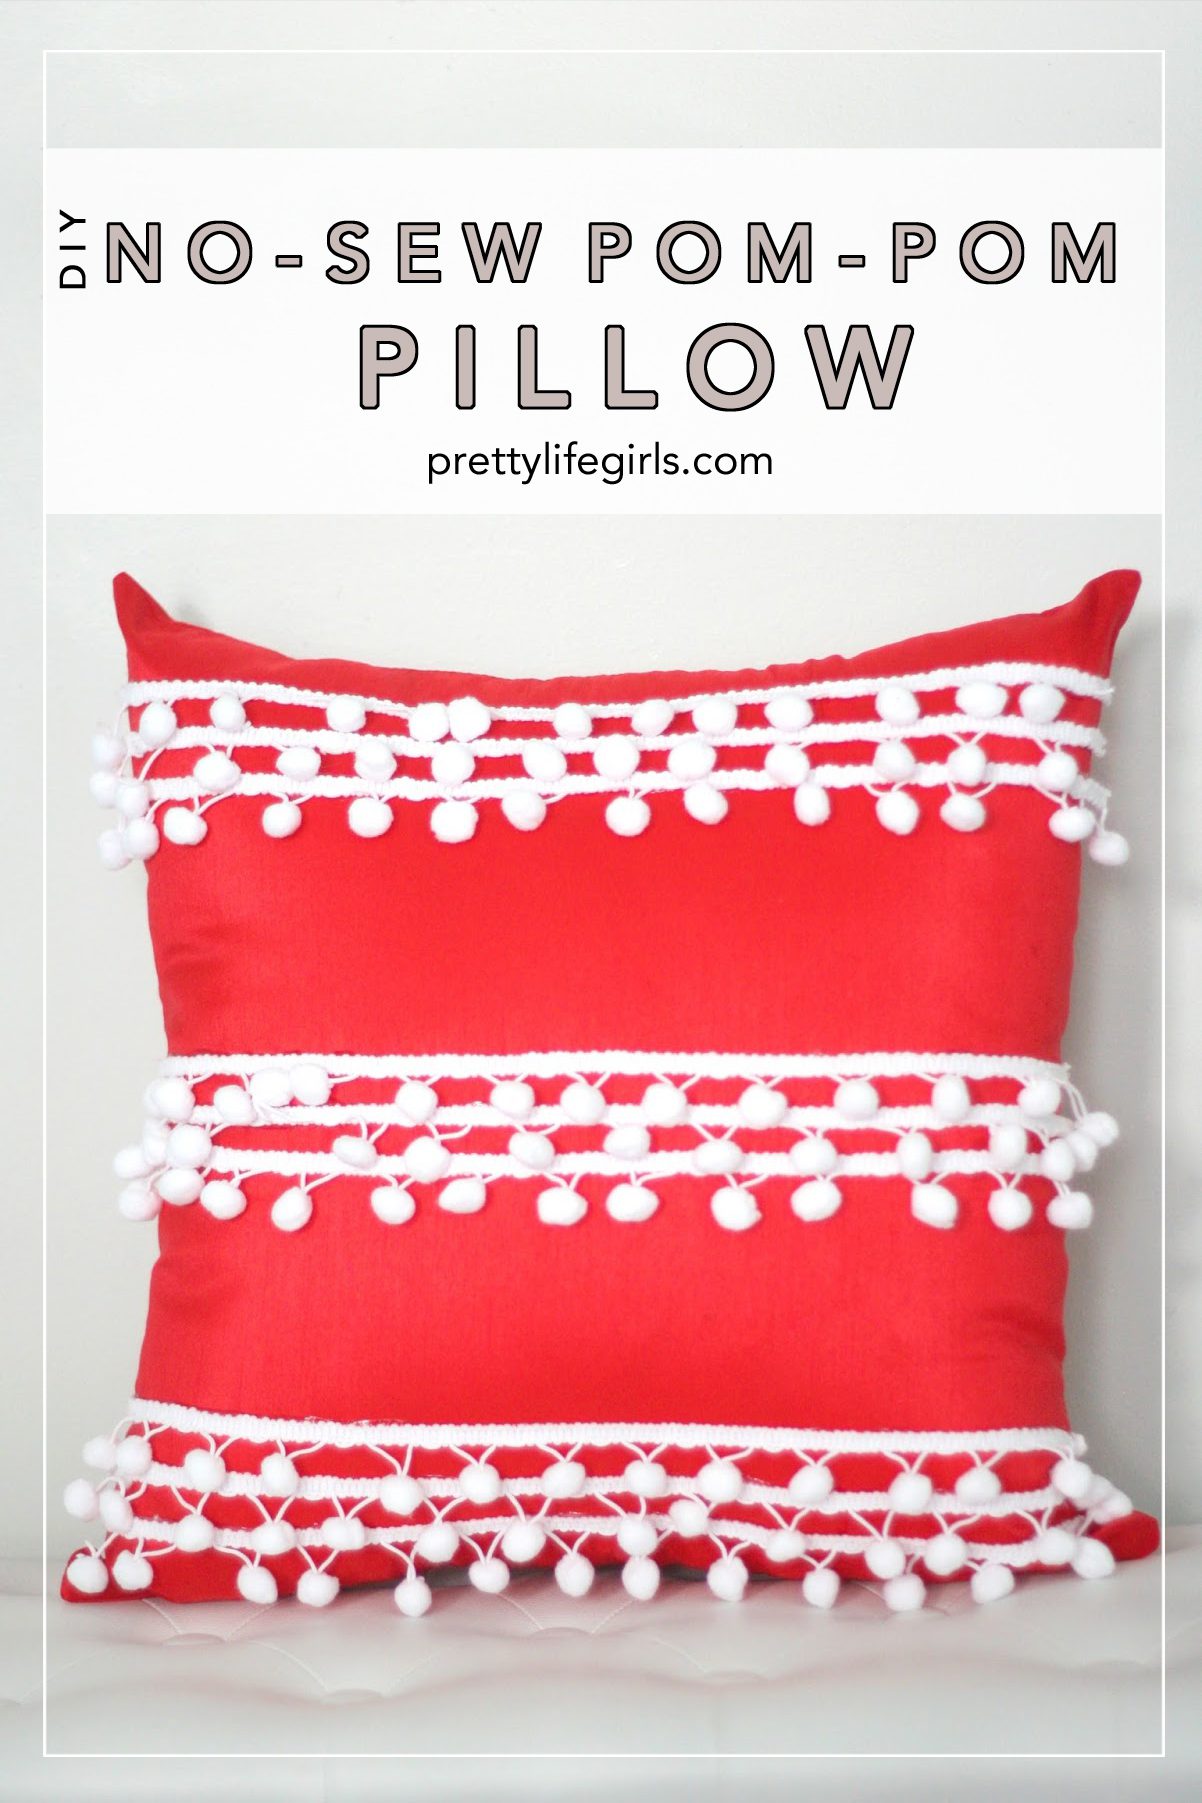 How to Make a No-Sew Lumbar Pillow